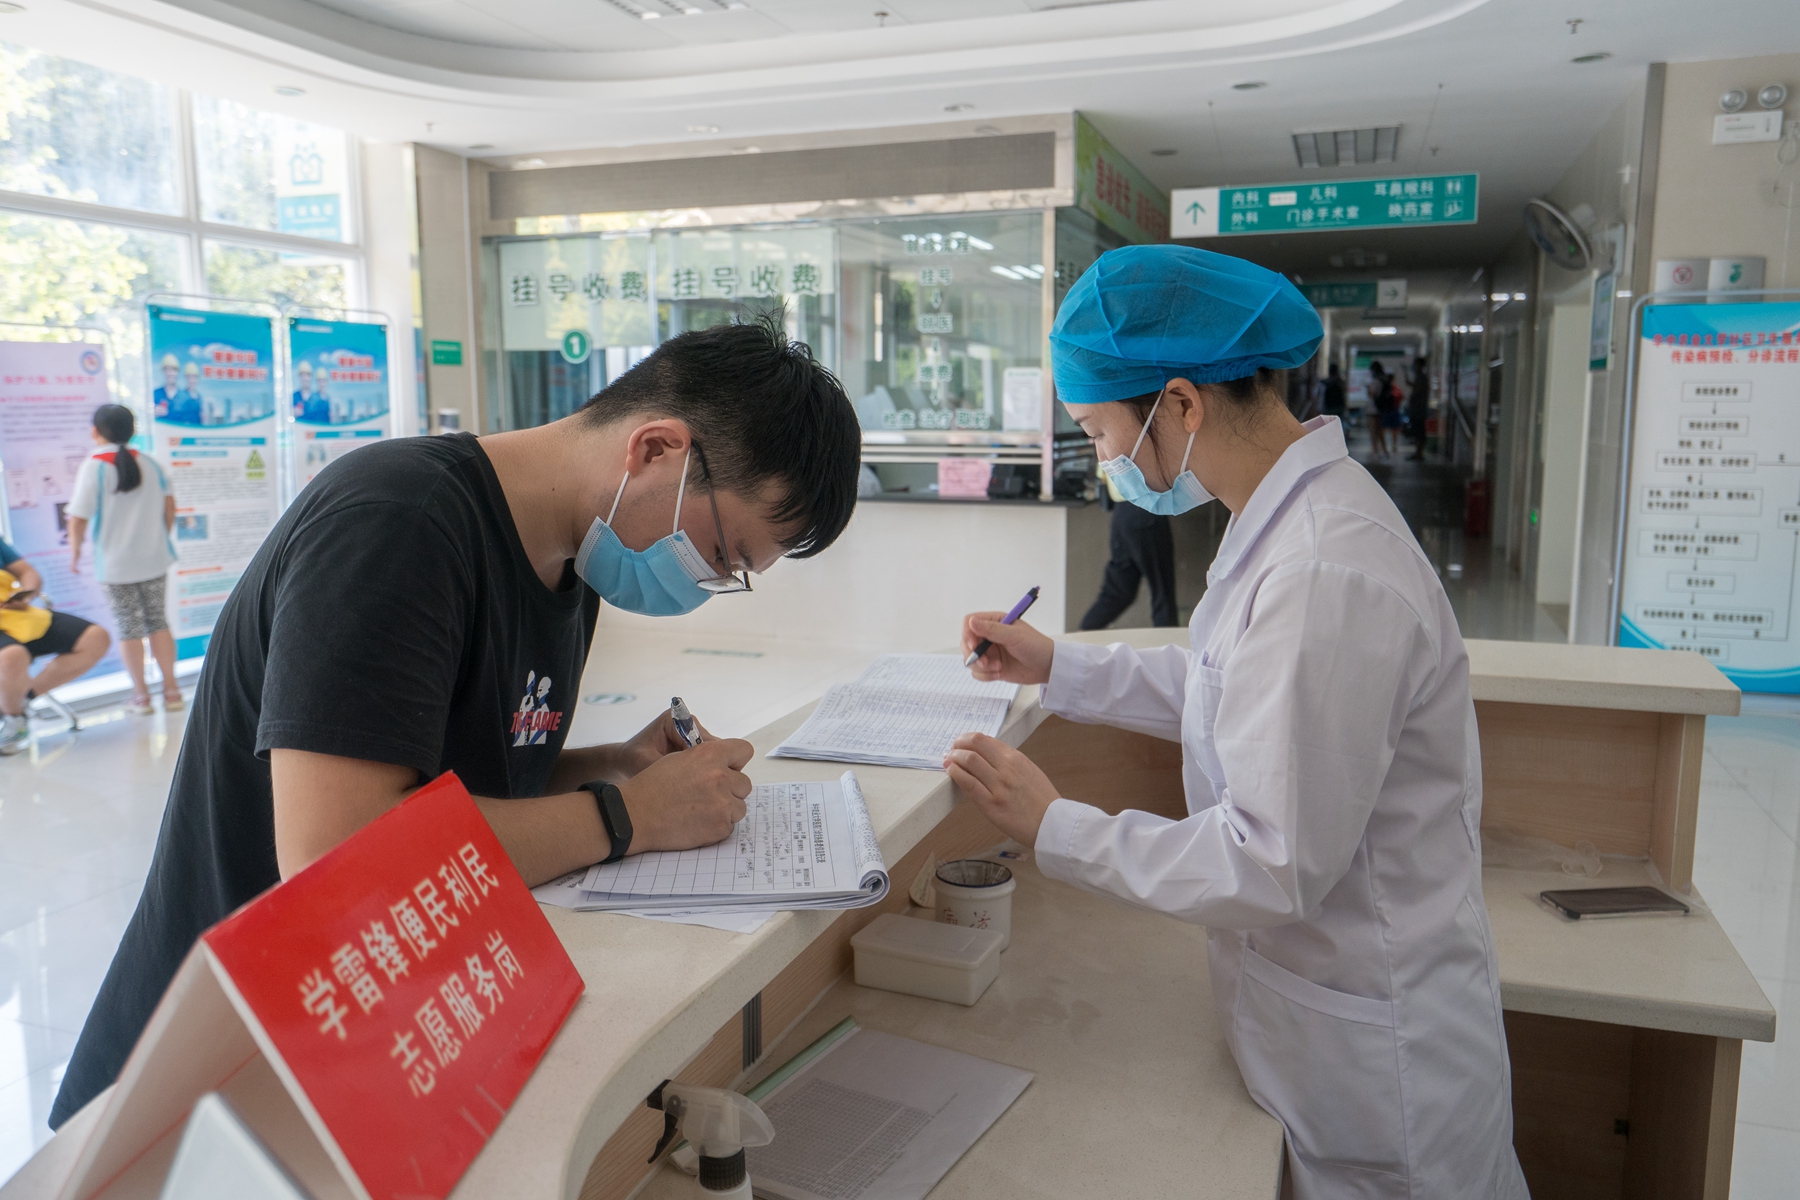 学生正在校医院填写信息【学通社记者 刘博文 摄】